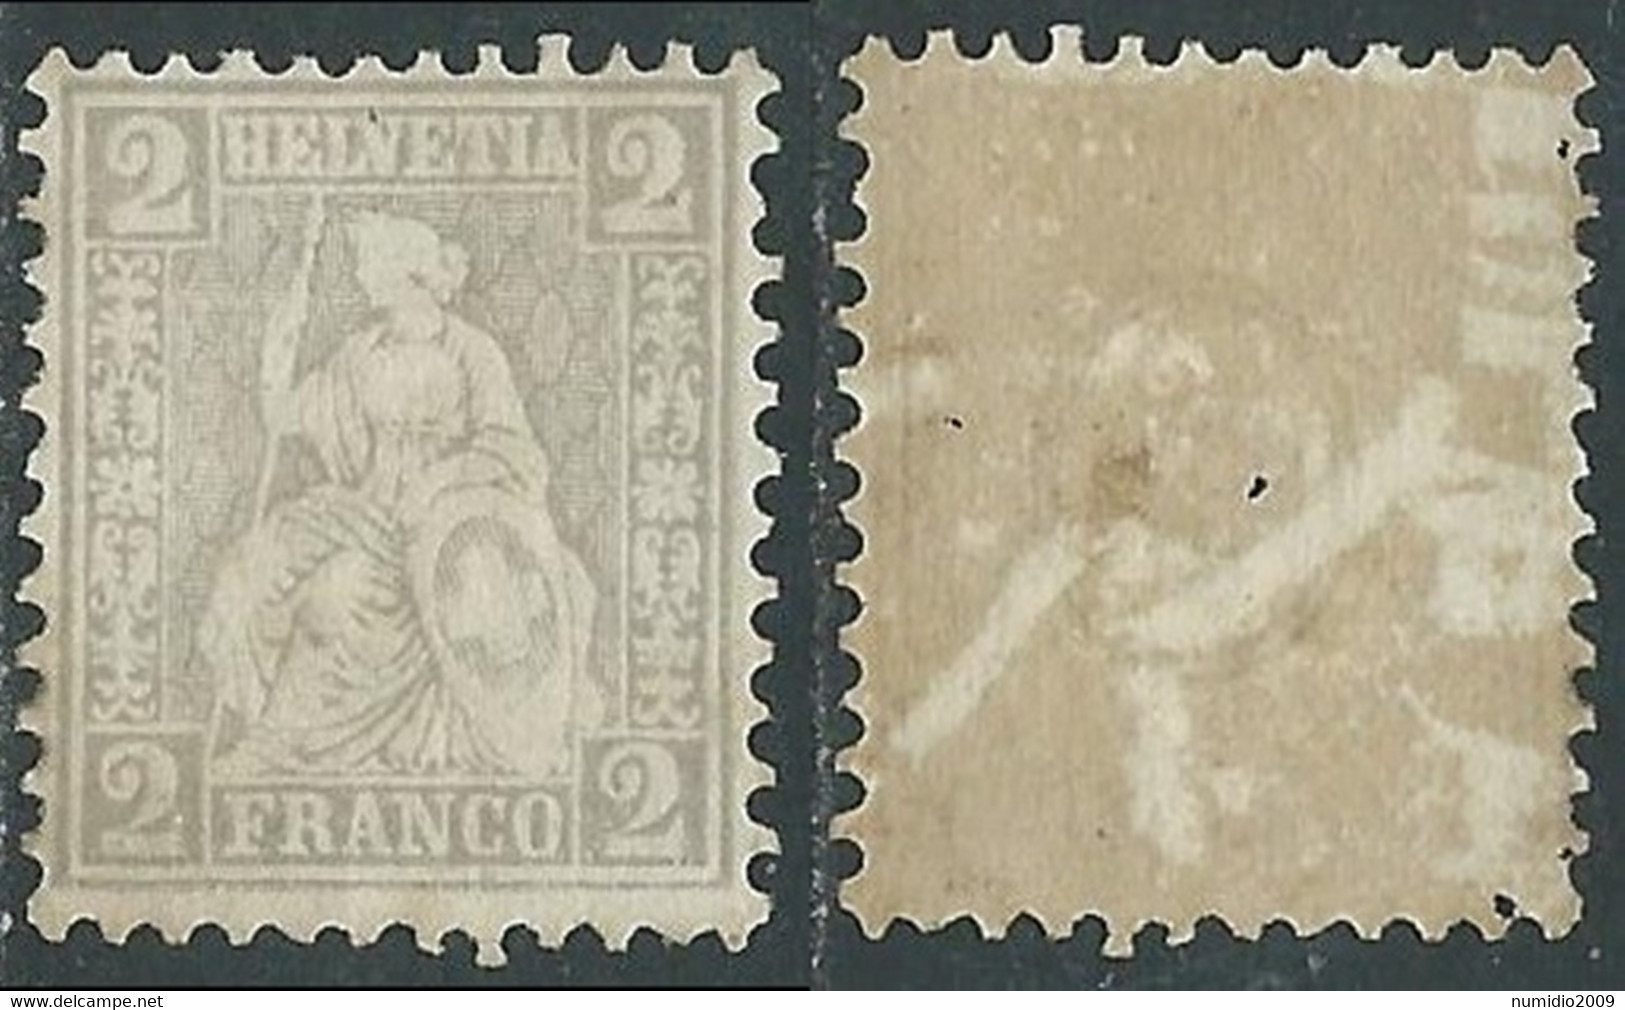 1862 SVIZZERA ALLEGORIA SEDUTA 2 CENT SENZA GOMMA - RC13-5 - Unused Stamps